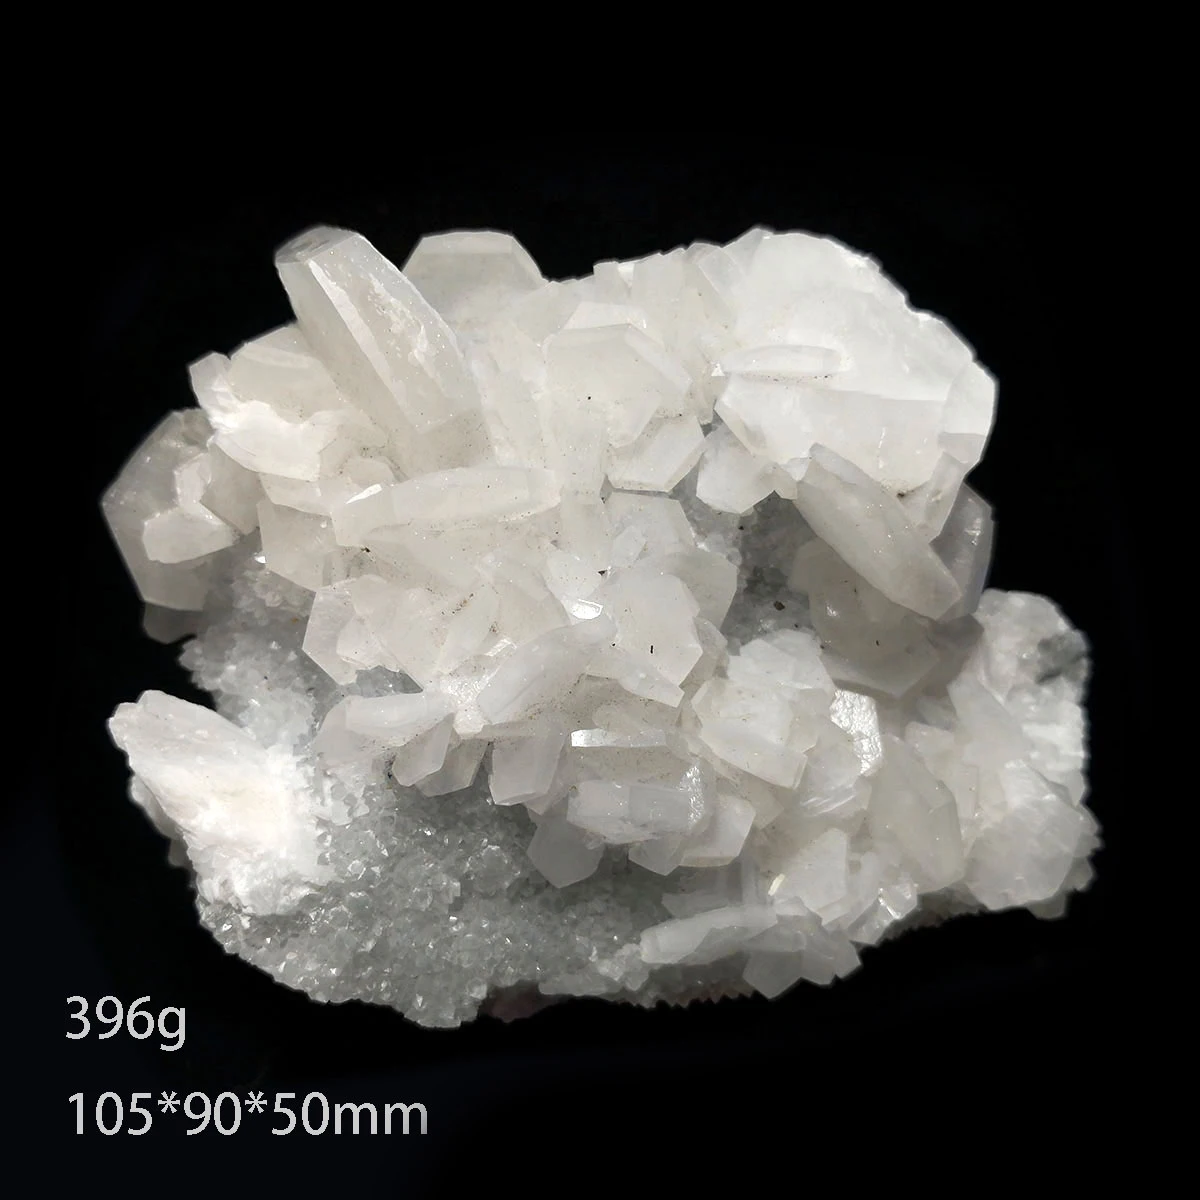 

Образец из минерального кристалла кальцита, 396 г, B1-2 натуральный кварц, украшение из провинции Фуцзянь, Китай